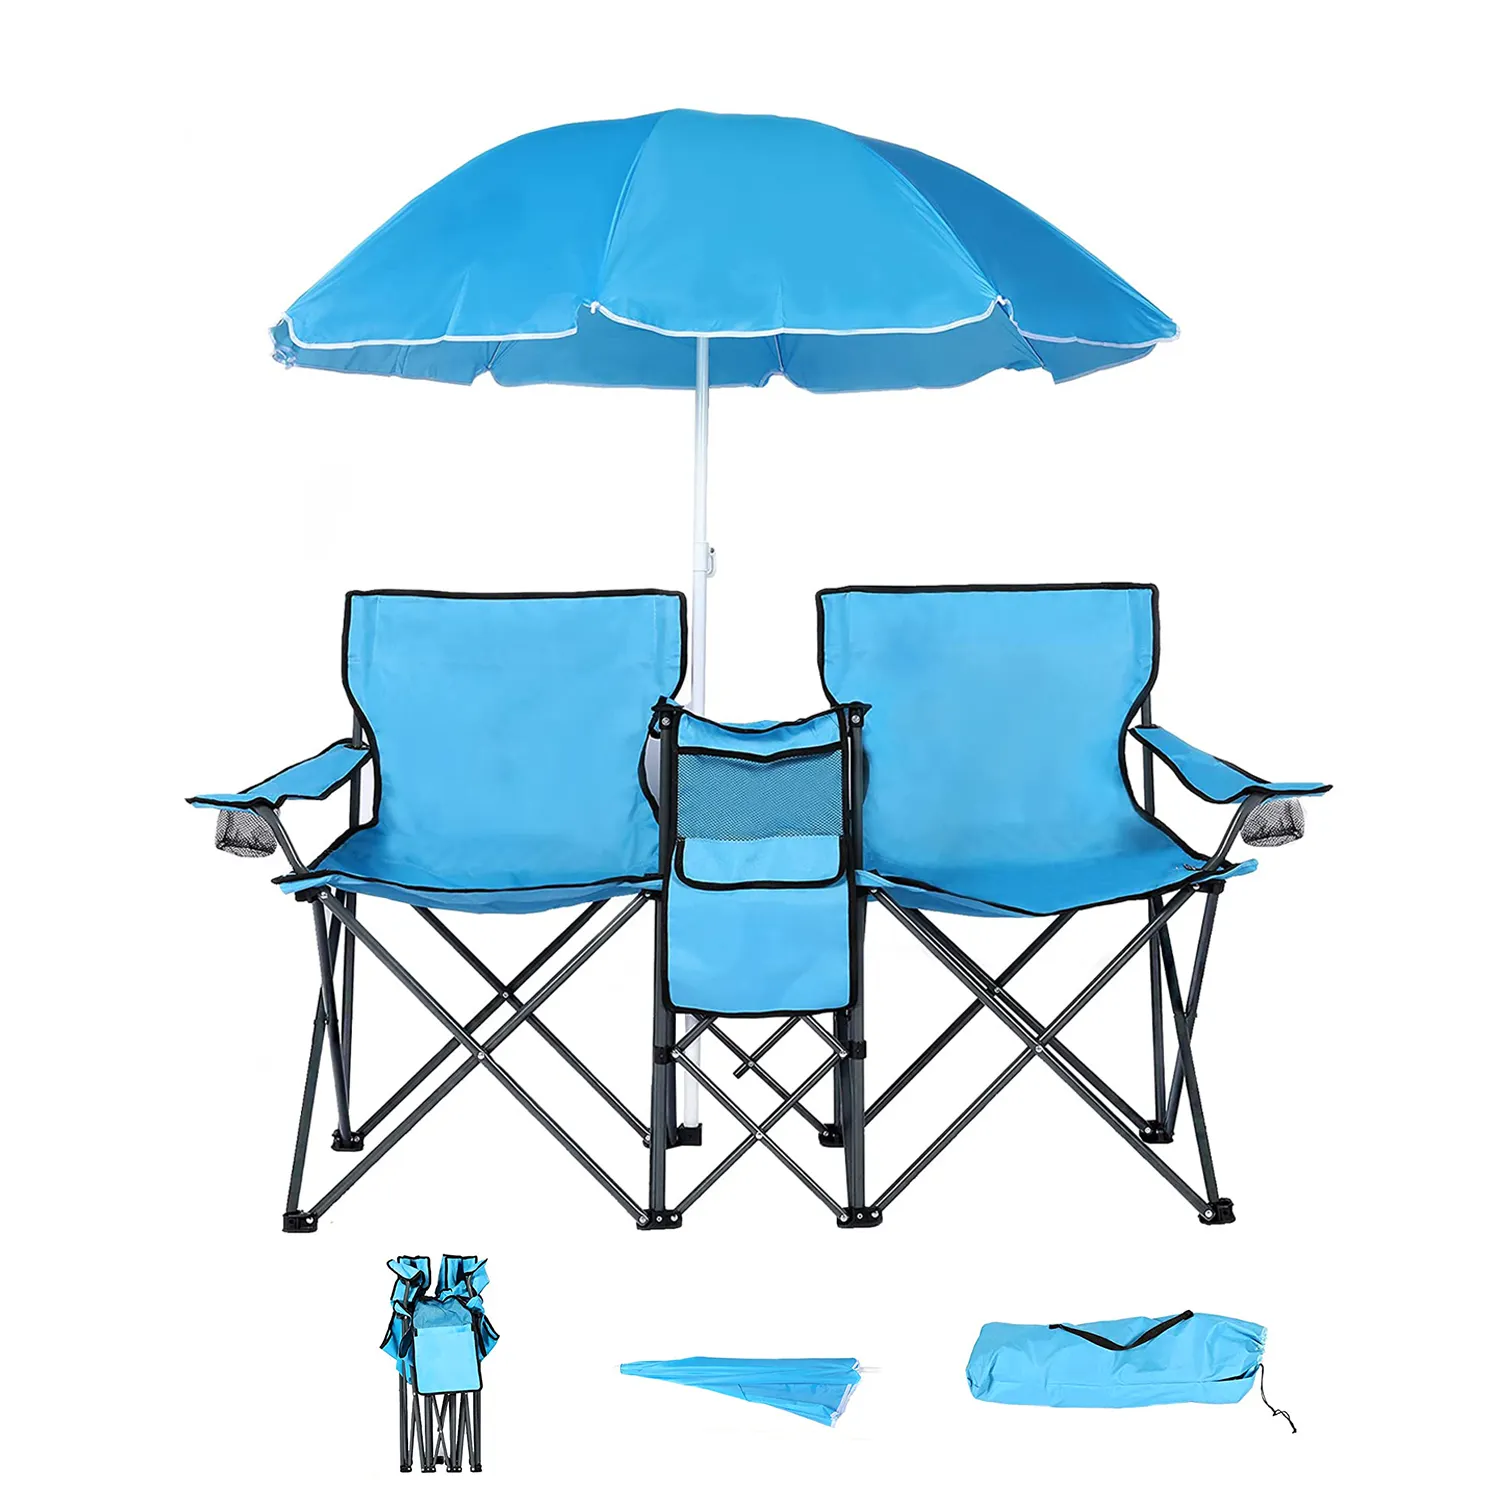 Juego de sillas dobles portátiles para acampar, con bolsa enfriadora, mesas plegables y sillas para eventos, venta al por mayor